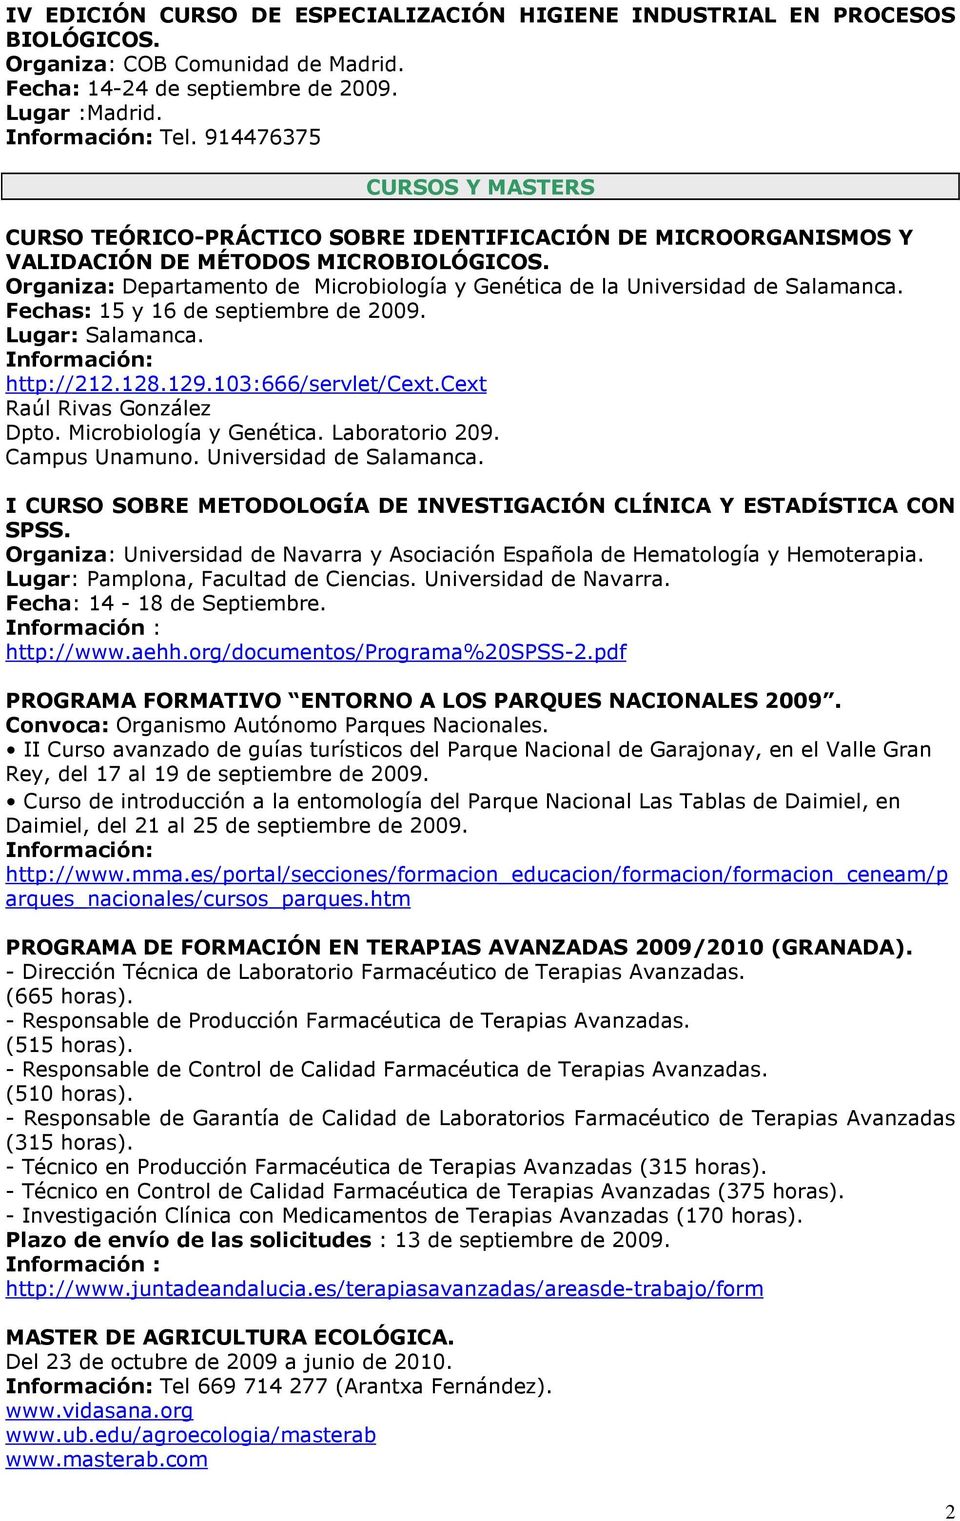 Organiza: Departamento de Microbiología y Genética de la Universidad de Salamanca. Fechas: 15 y 16 de septiembre de 2009. Lugar: Salamanca. http://212.128.129.103:666/servlet/cext.